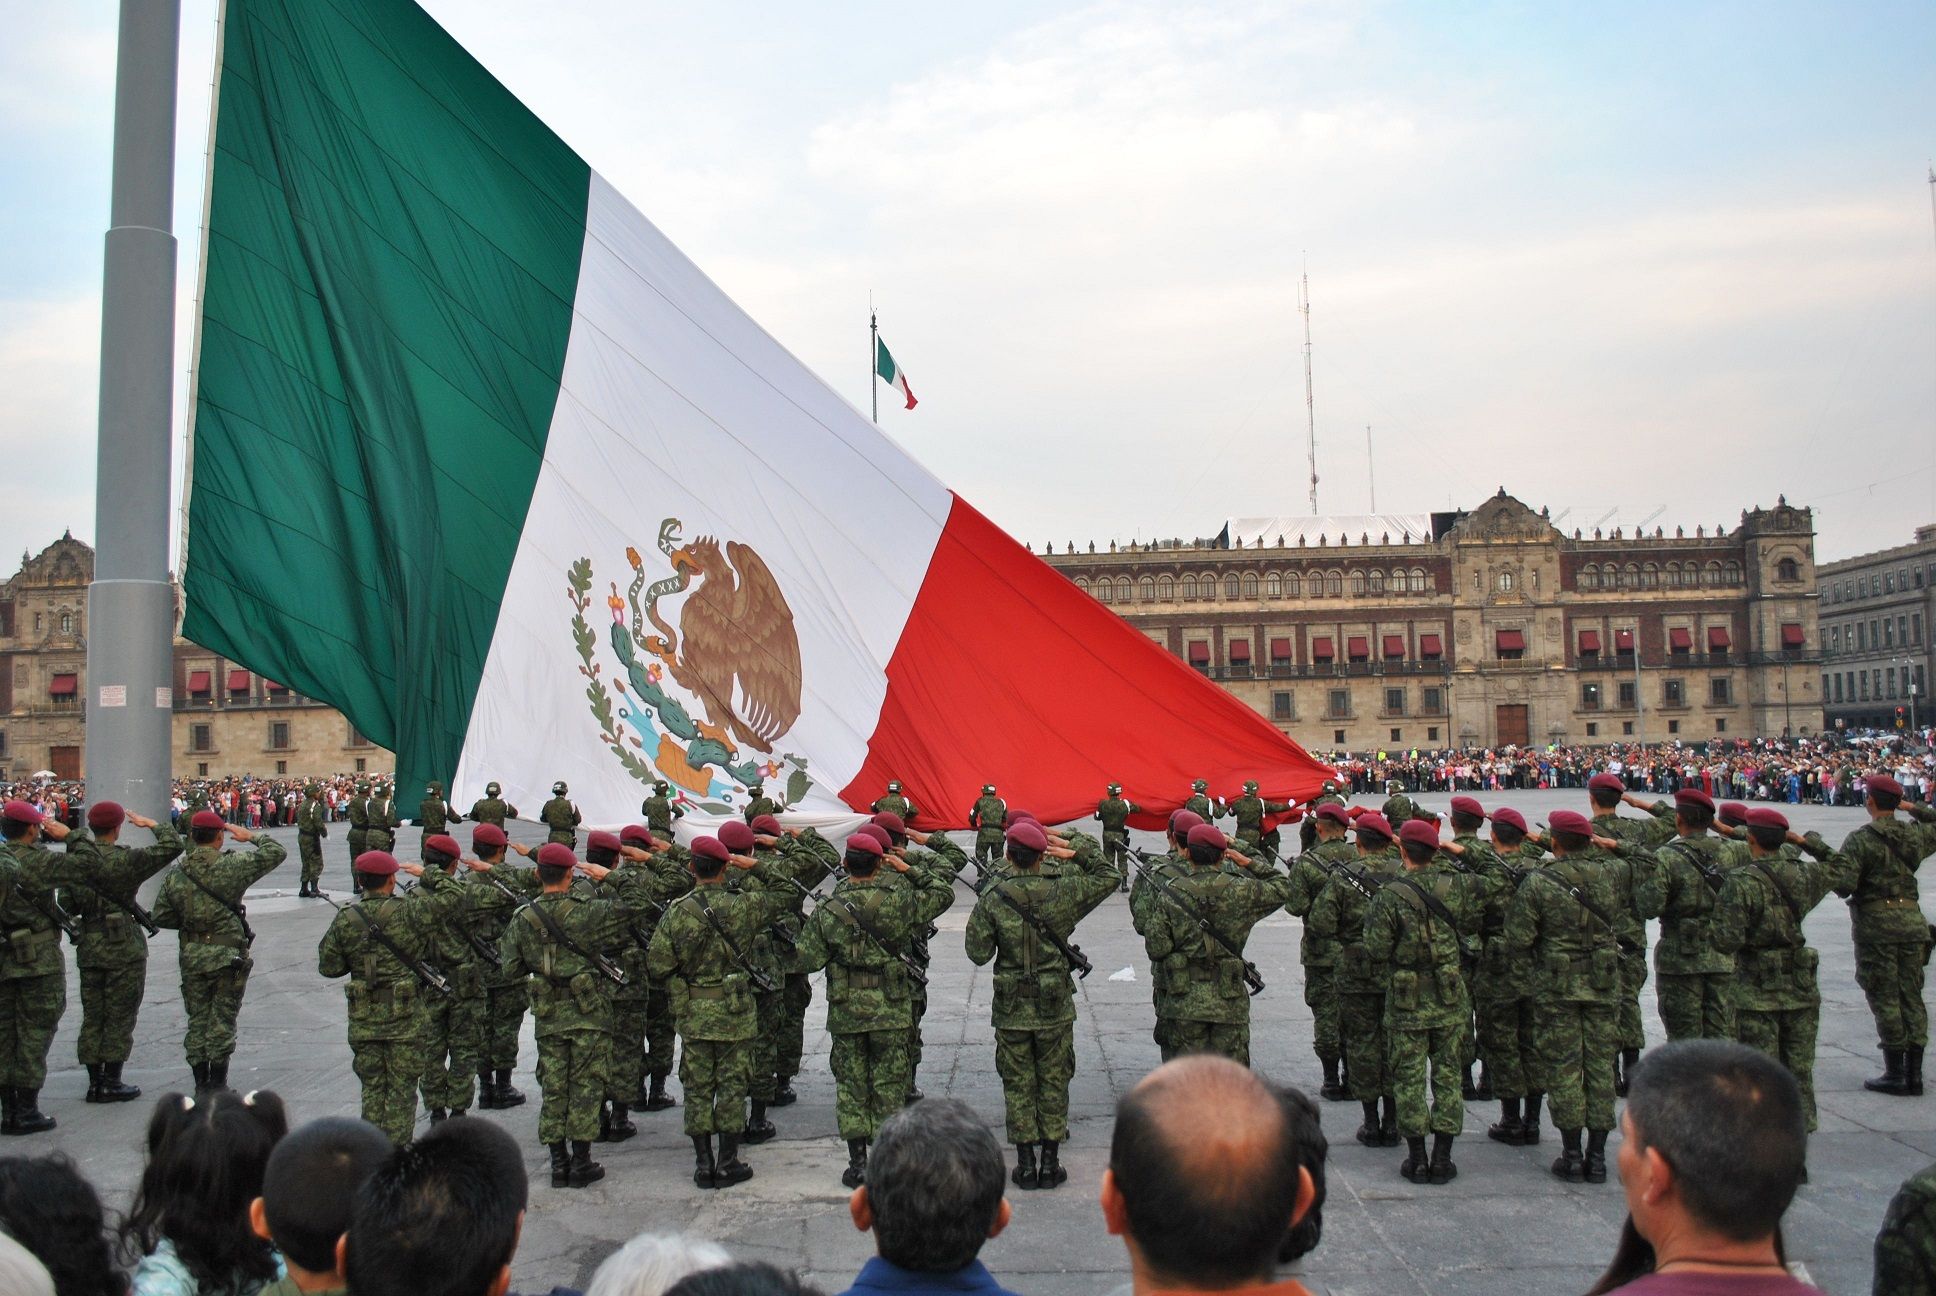 Поднятие "монументального флага" Мексики шириной в 25 метров и длиной в 14 метров.